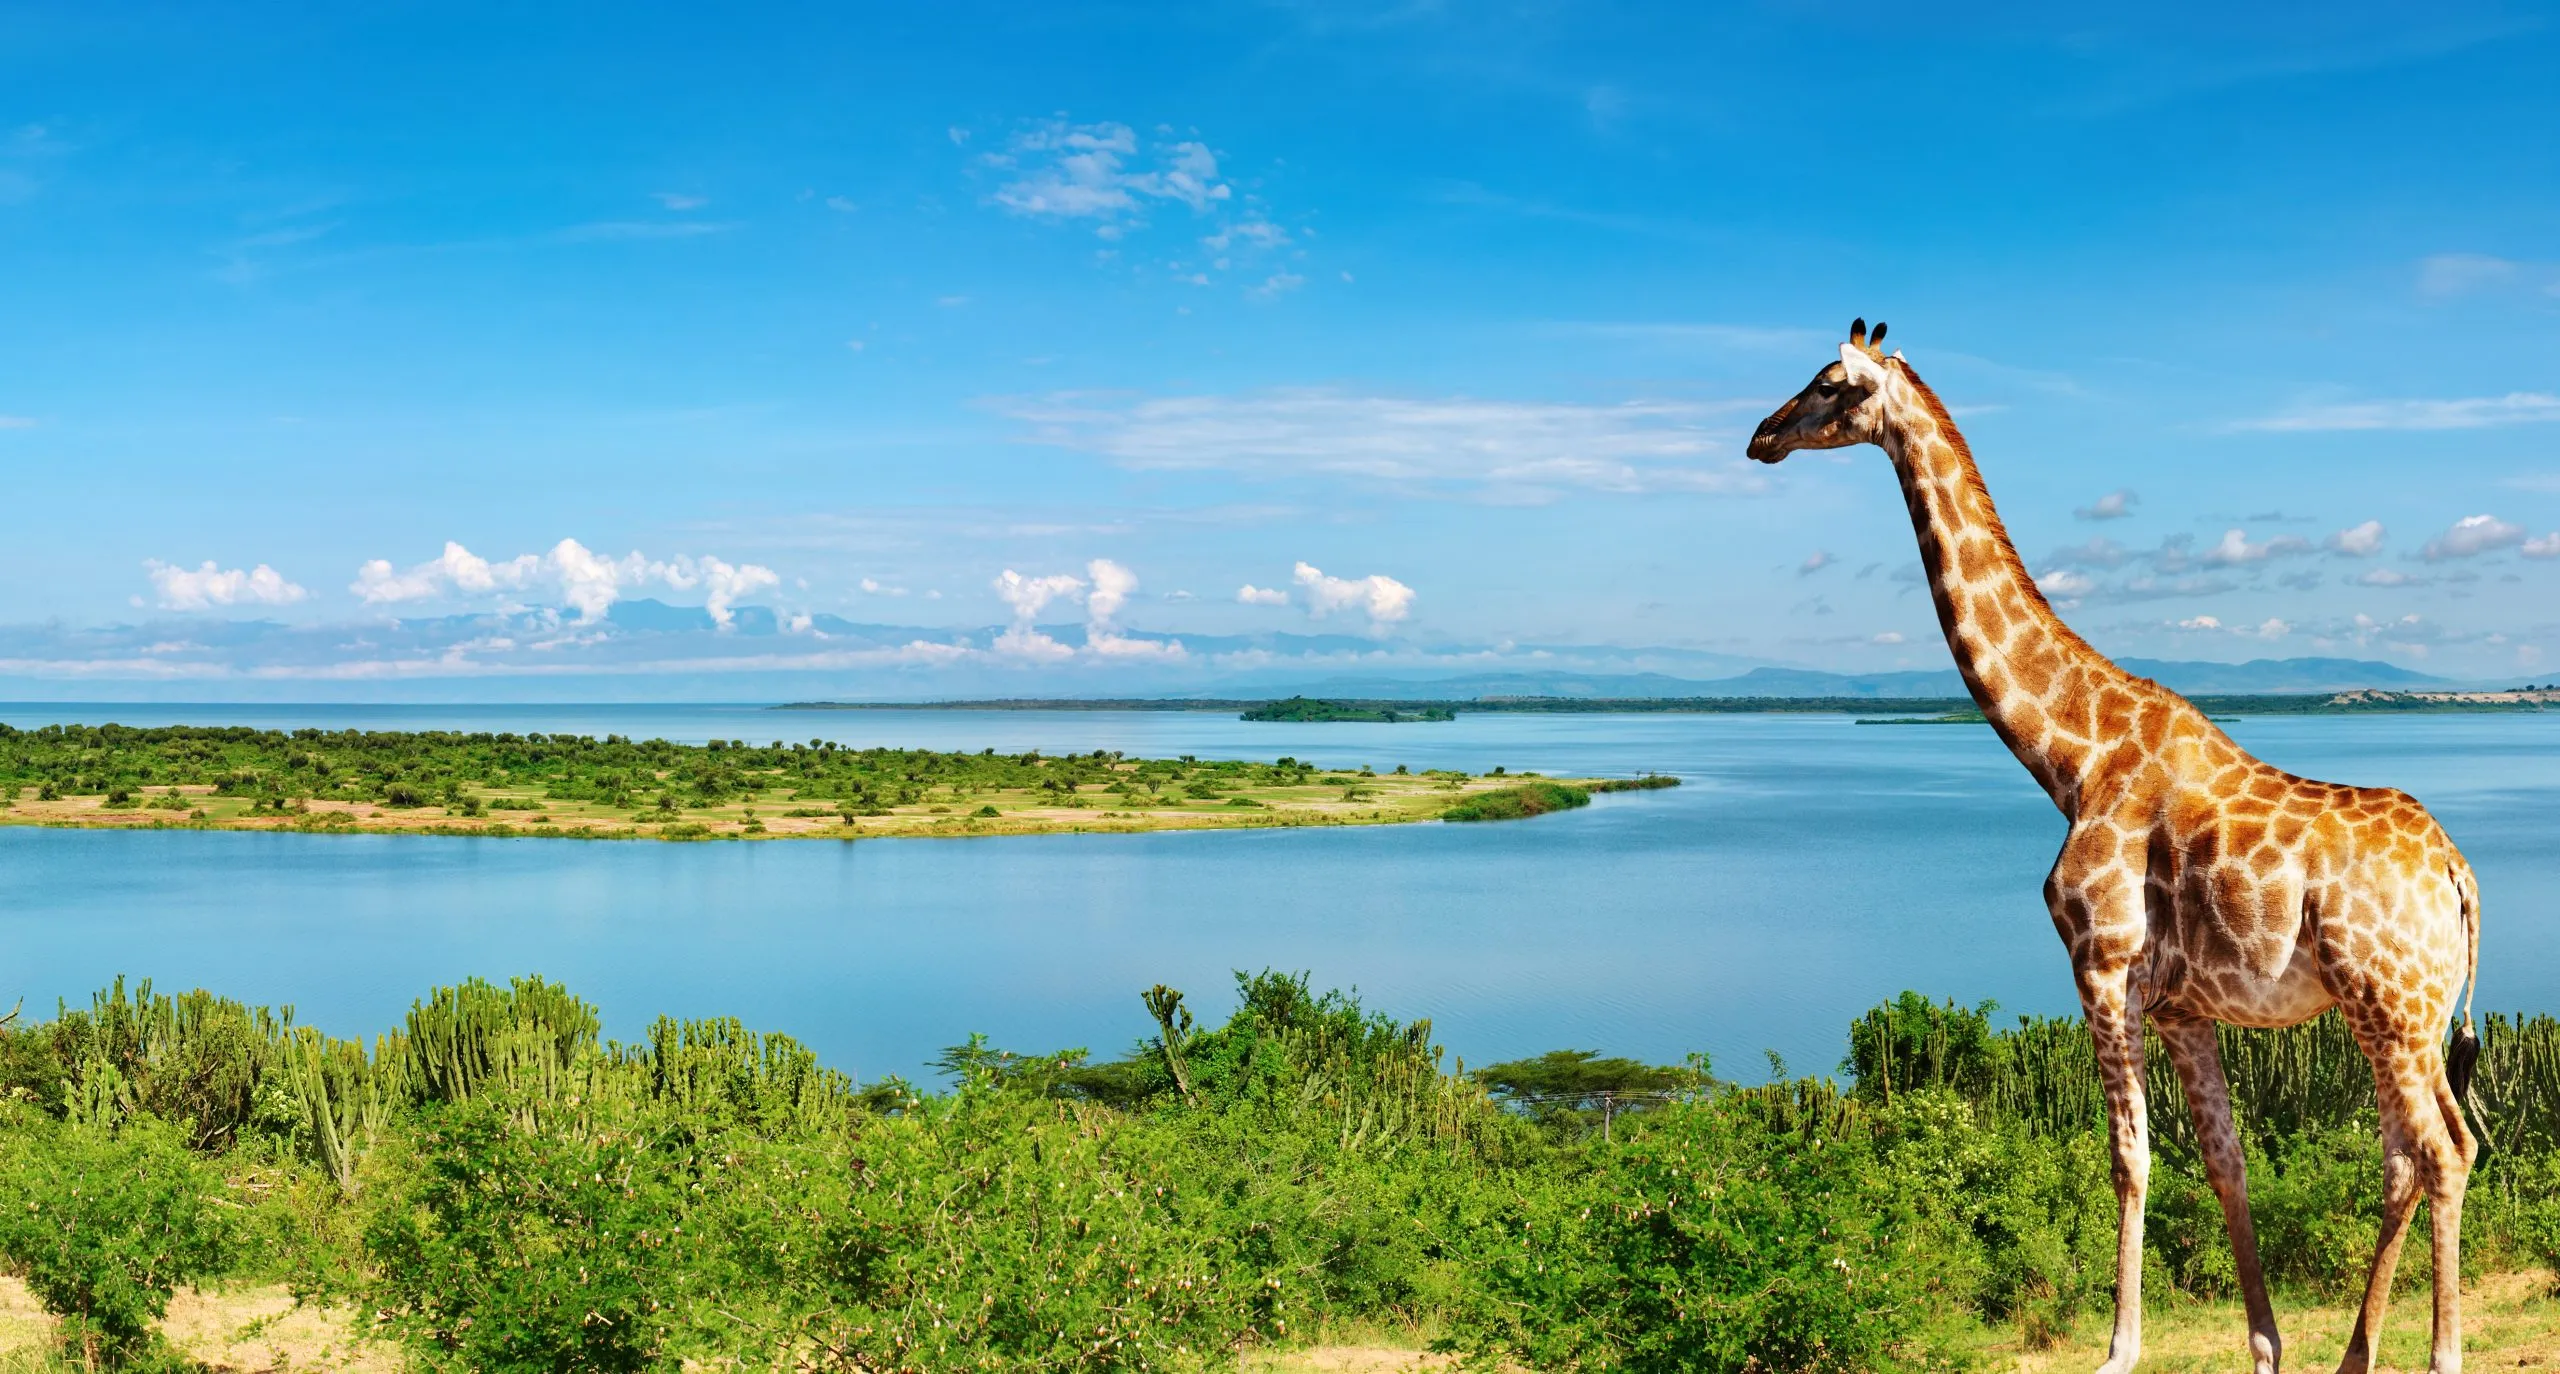 Nil-Fluss, Uganda